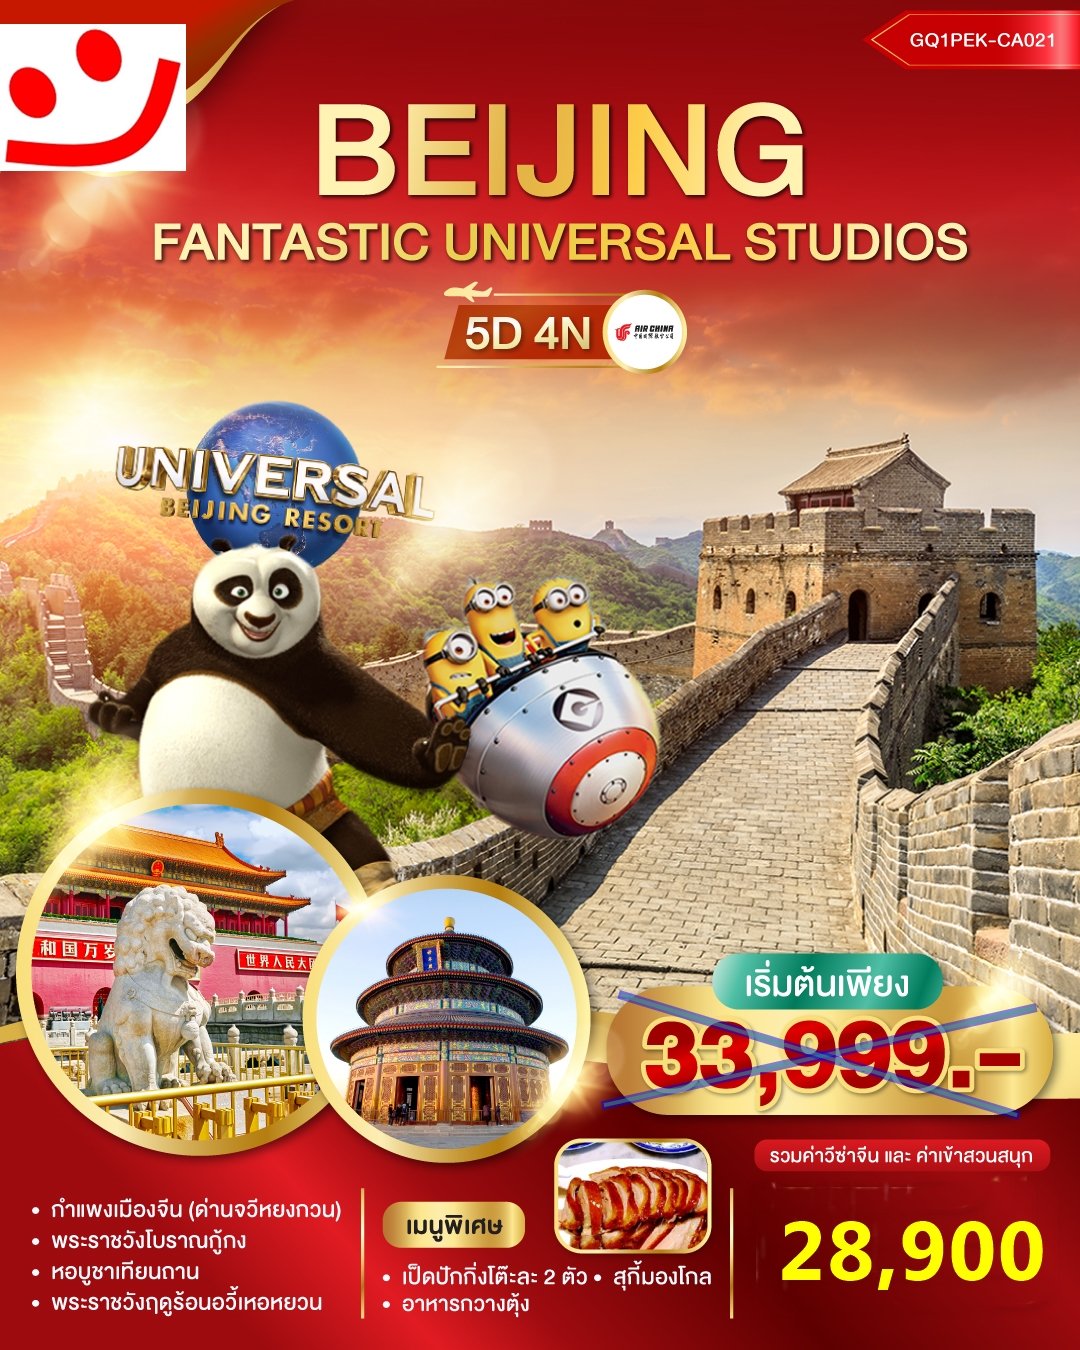 ทัวร์จีน ปักกิ่ง Universal Beijing Experience 5 วัน 4 คืน -CA